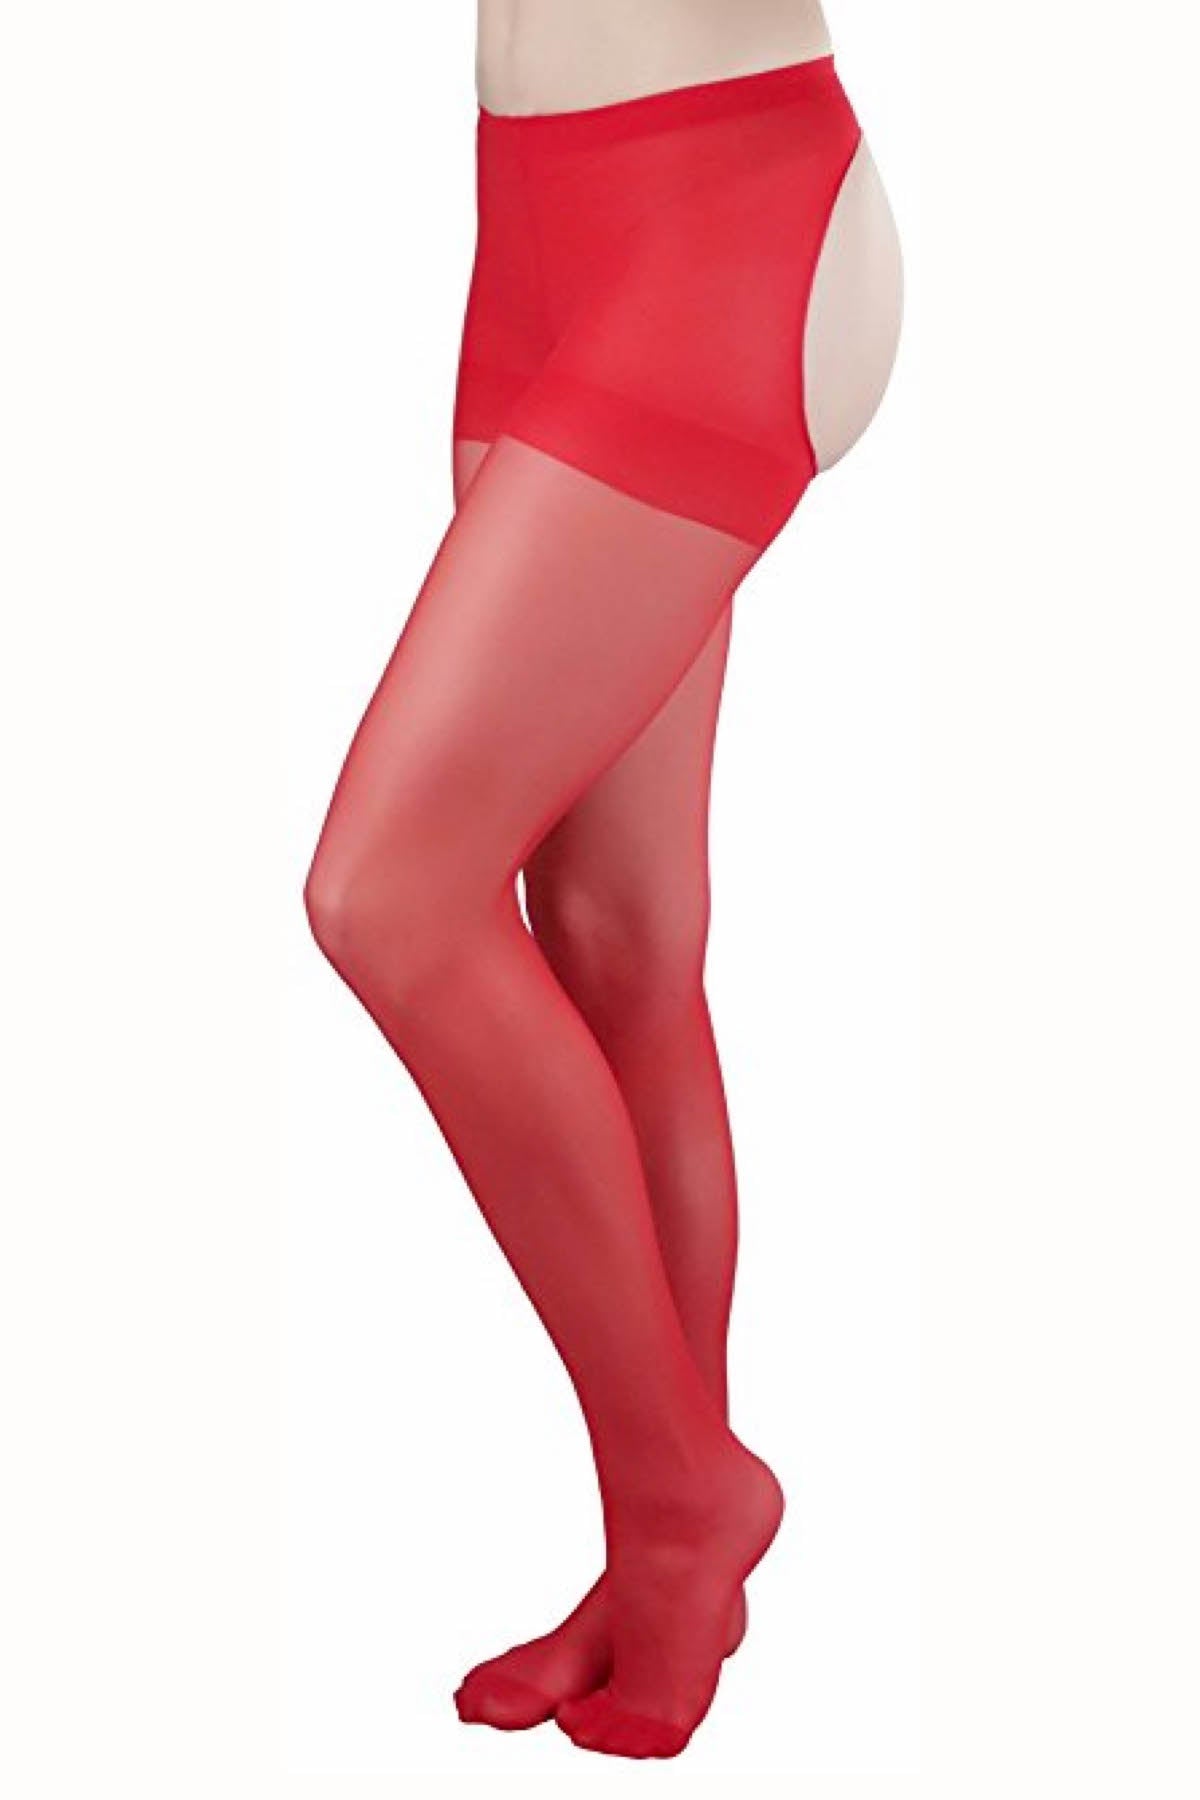 Desire Hosiery Red Sheer Control-Top Thong Pantyhose